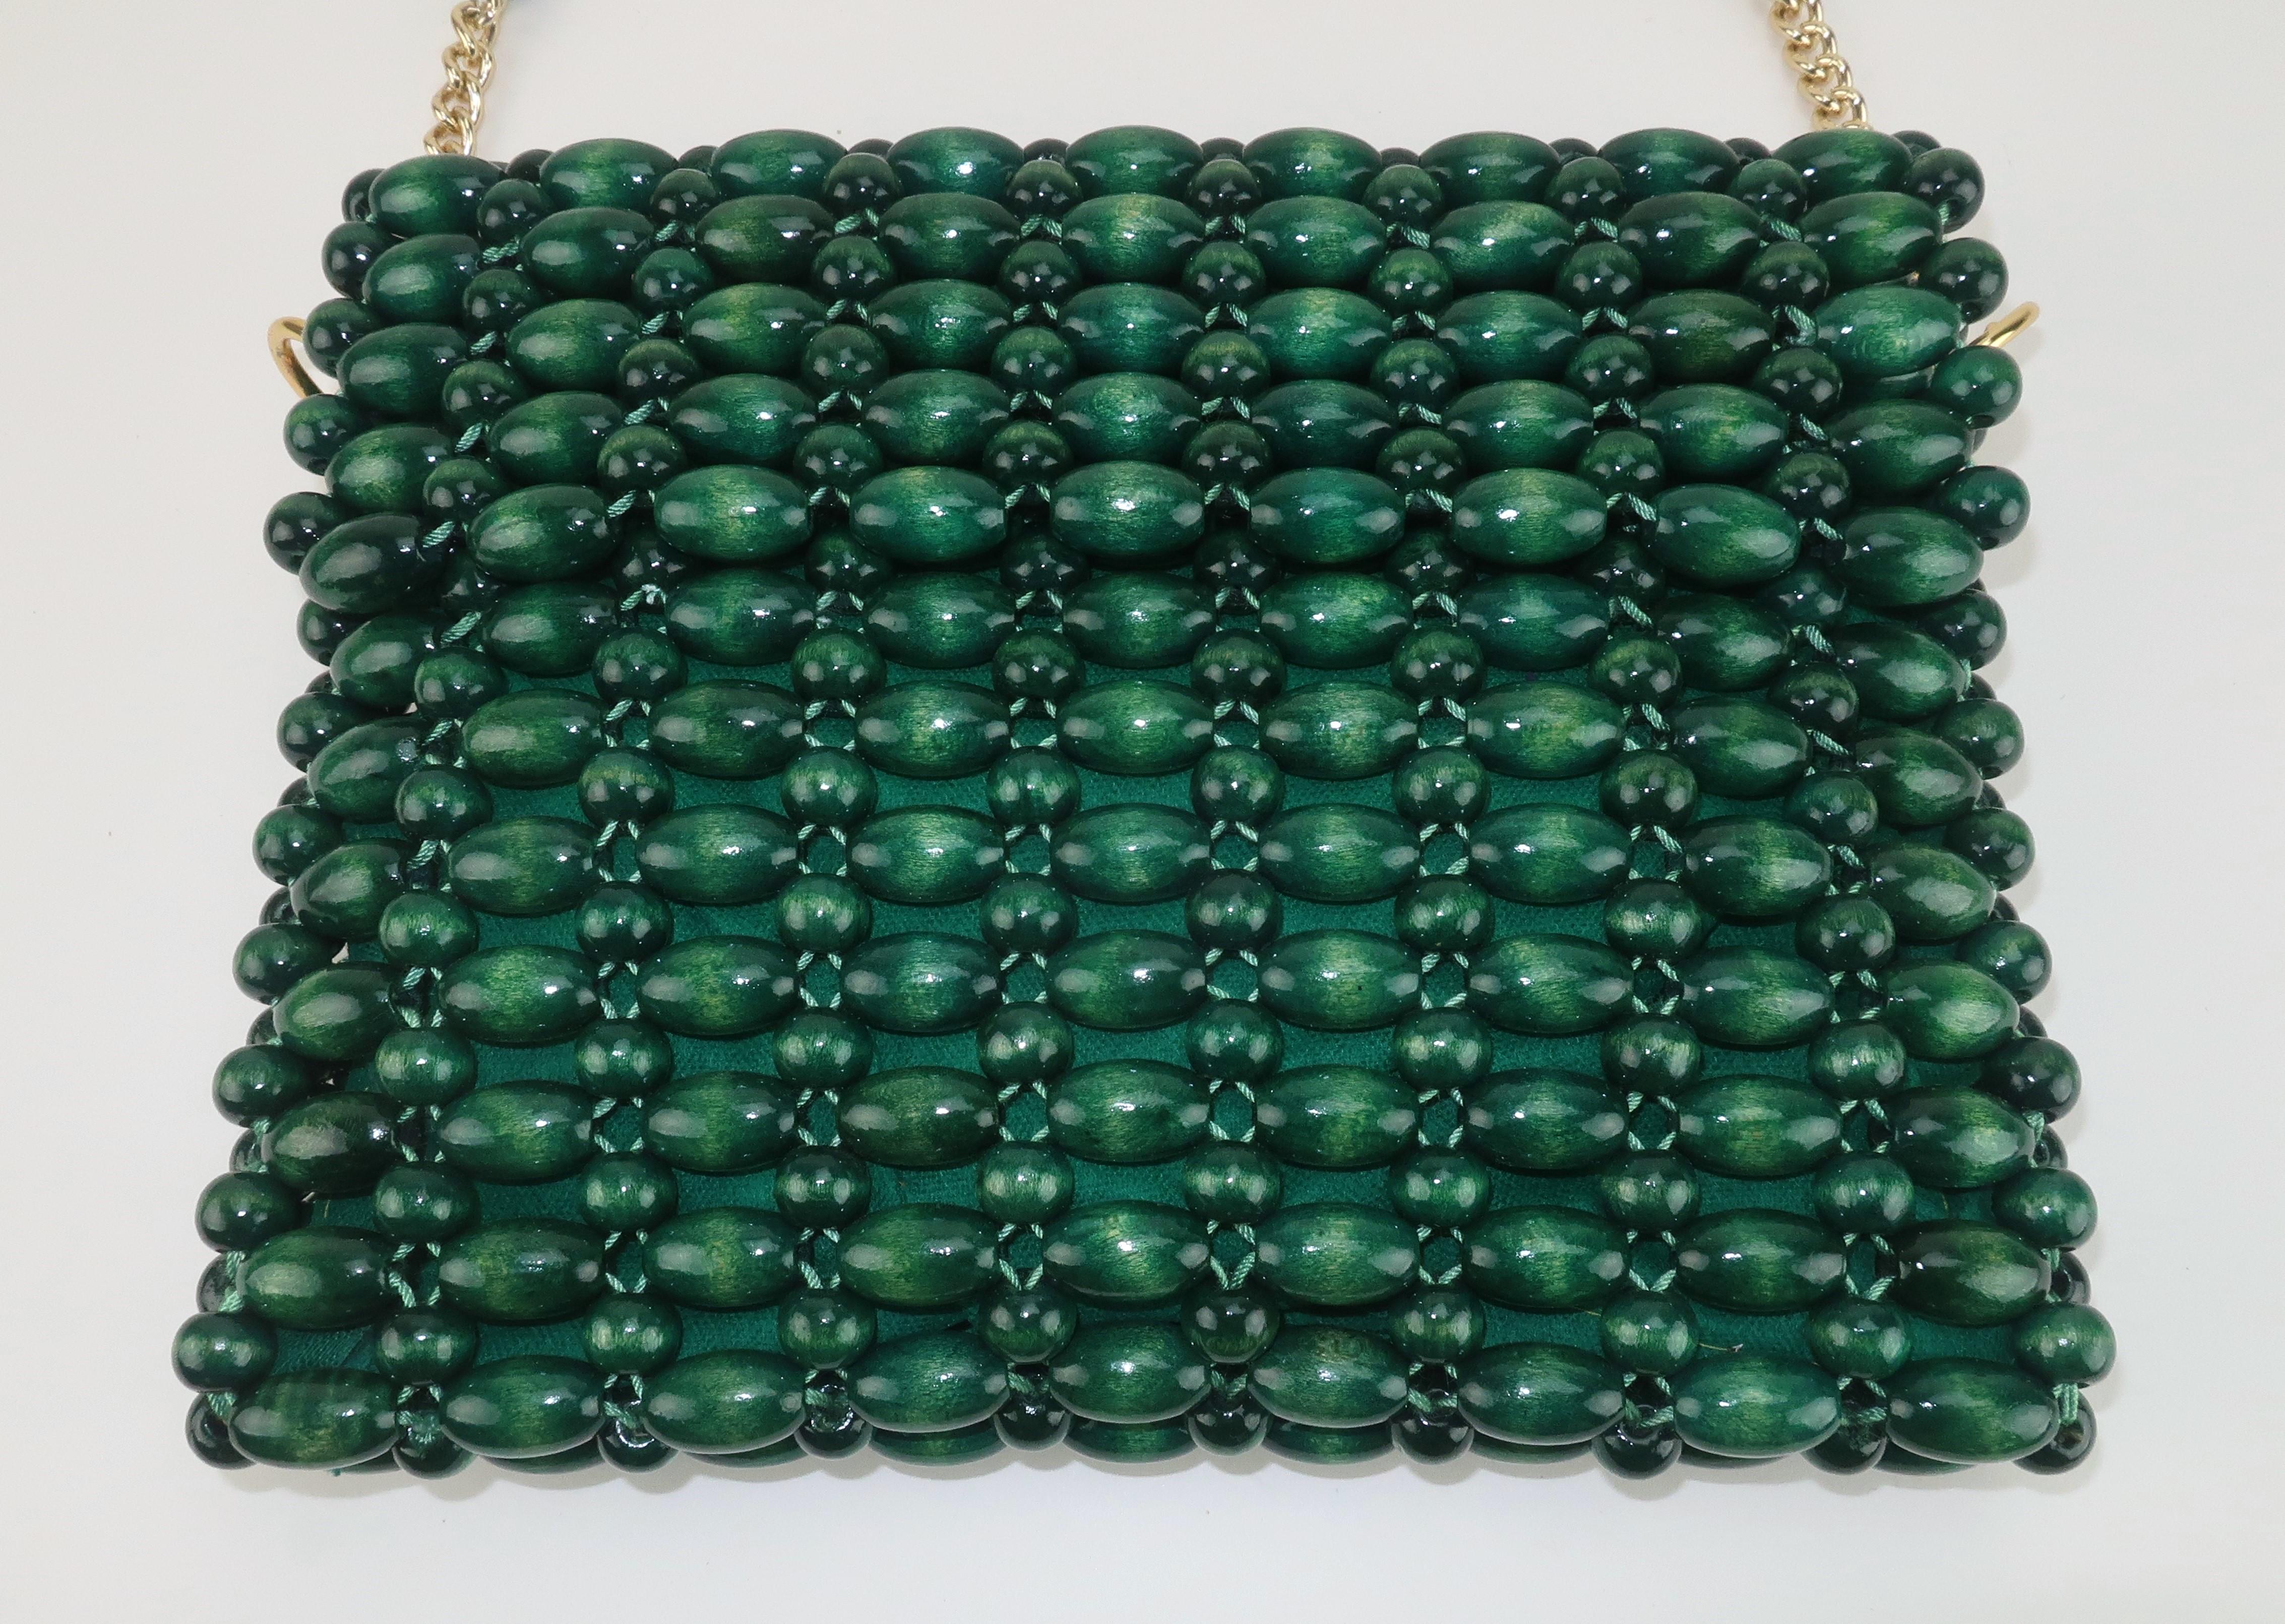 Sac à main moderne des années 1960 en perles de bois d'un riche vert émeraude.  La poignée à hauteur d'épaule est ornée de chaînes dorées pour apporter une petite touche de glam à ce look par ailleurs bohème chic.  Le rabat avant se retourne pour